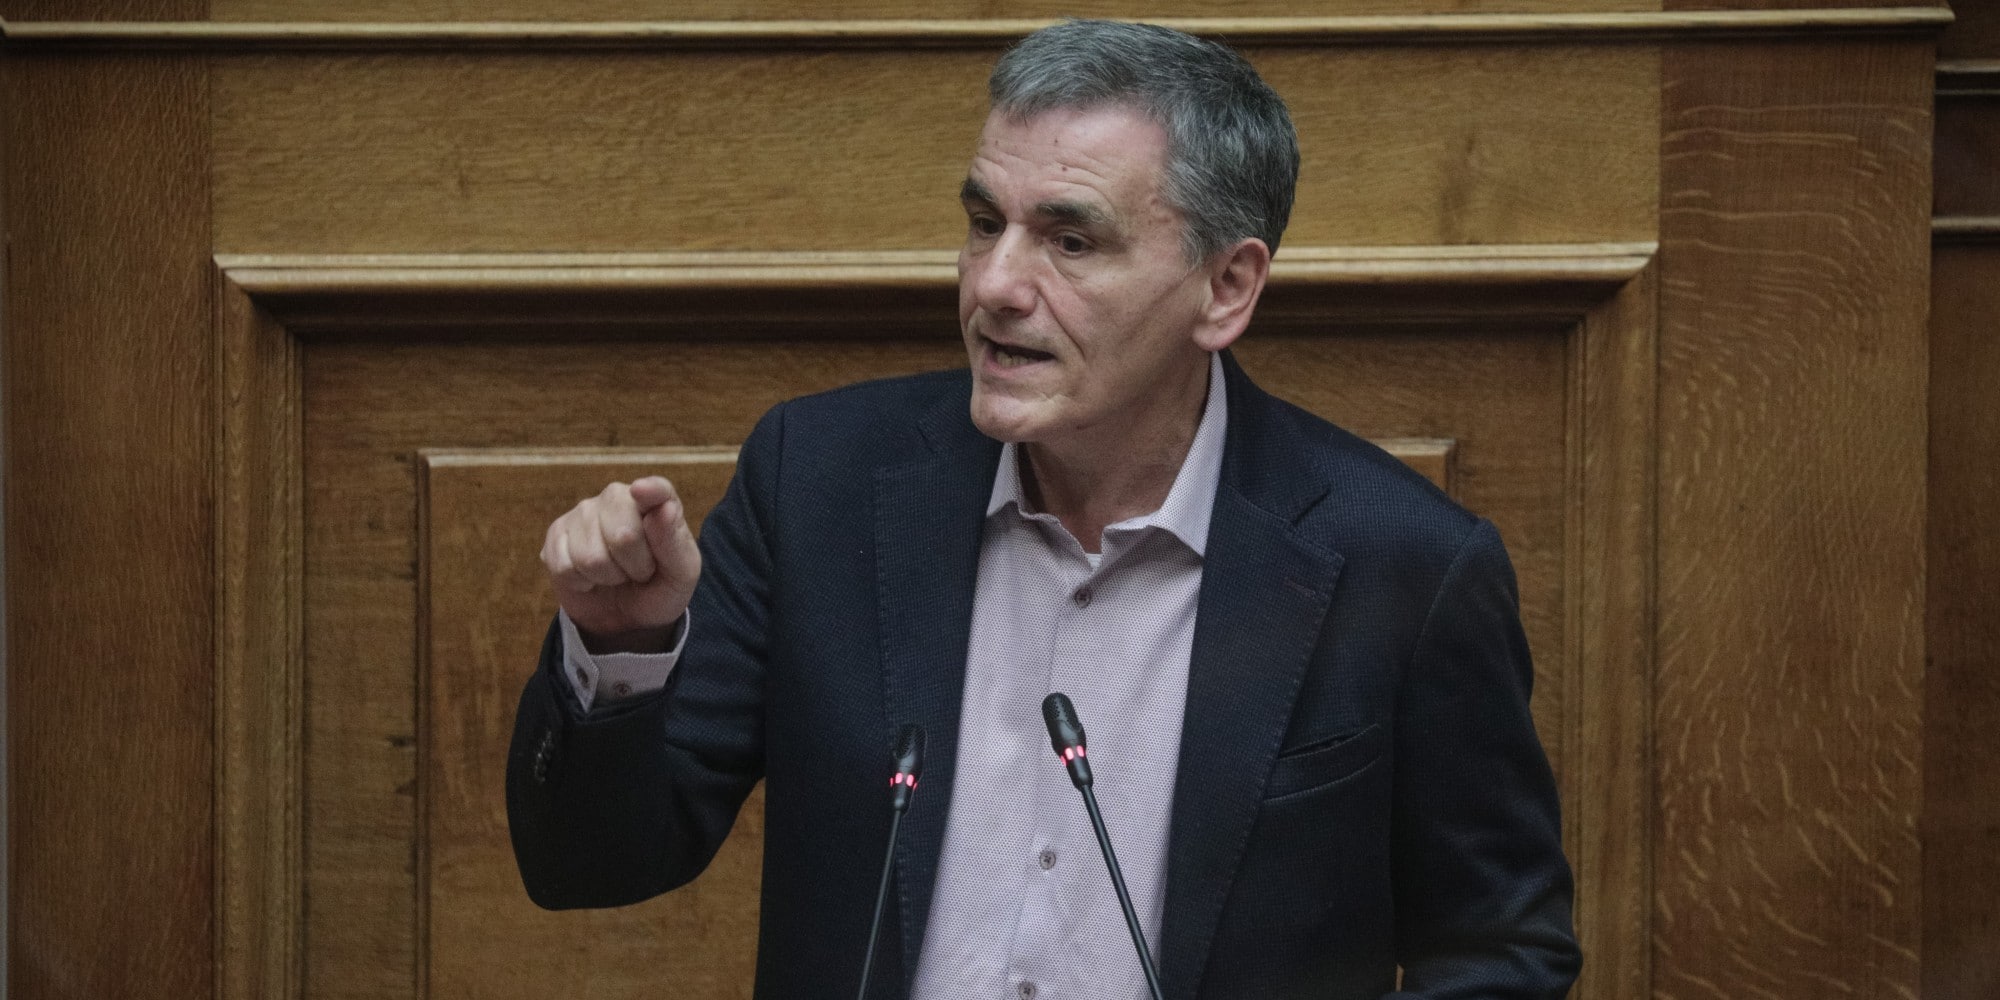 Ο κοινοβουλευτικός εκπρόσωπος του ΣΥΡΙΖΑ, Ευκλείδης Τσακαλώτος